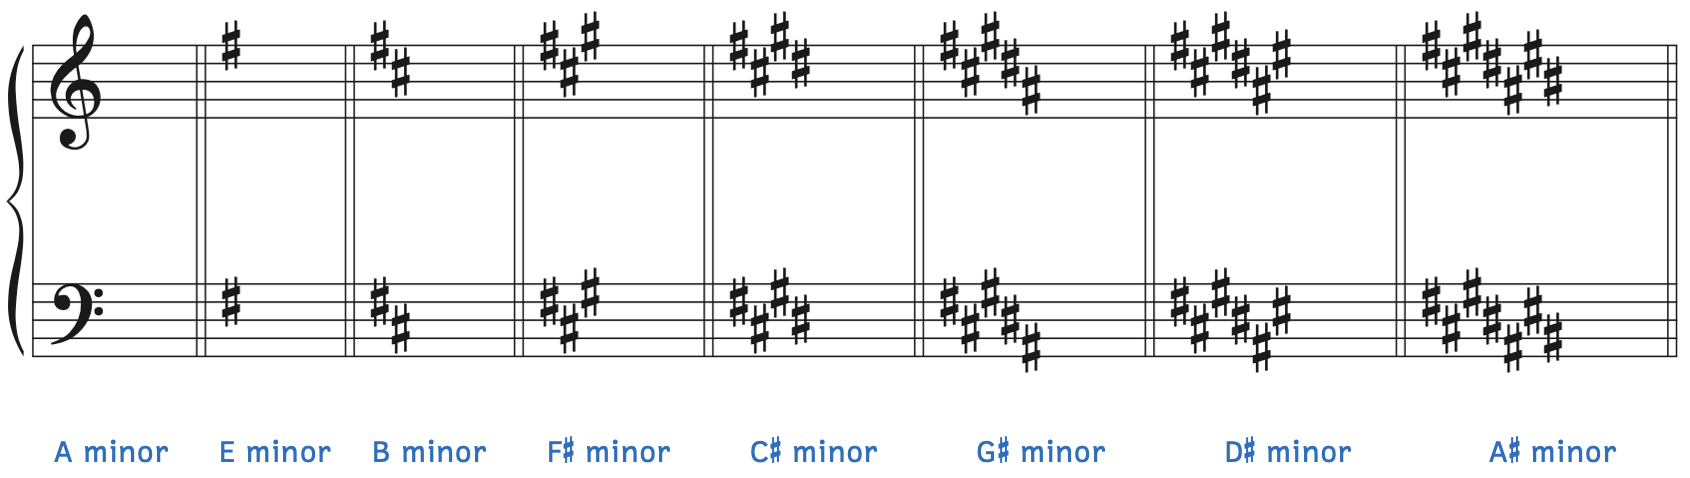 Minor keys from zero sharps to seven sharps. A-minor, zero sharps. E minor, one sharp. B minor, two sharps. F-sharp minor, three sharps. C-sharp minor, four sharps. G-sharp minor, five sharps. D-sharp minor, six sharps. A-sharp minor, seven sharps.